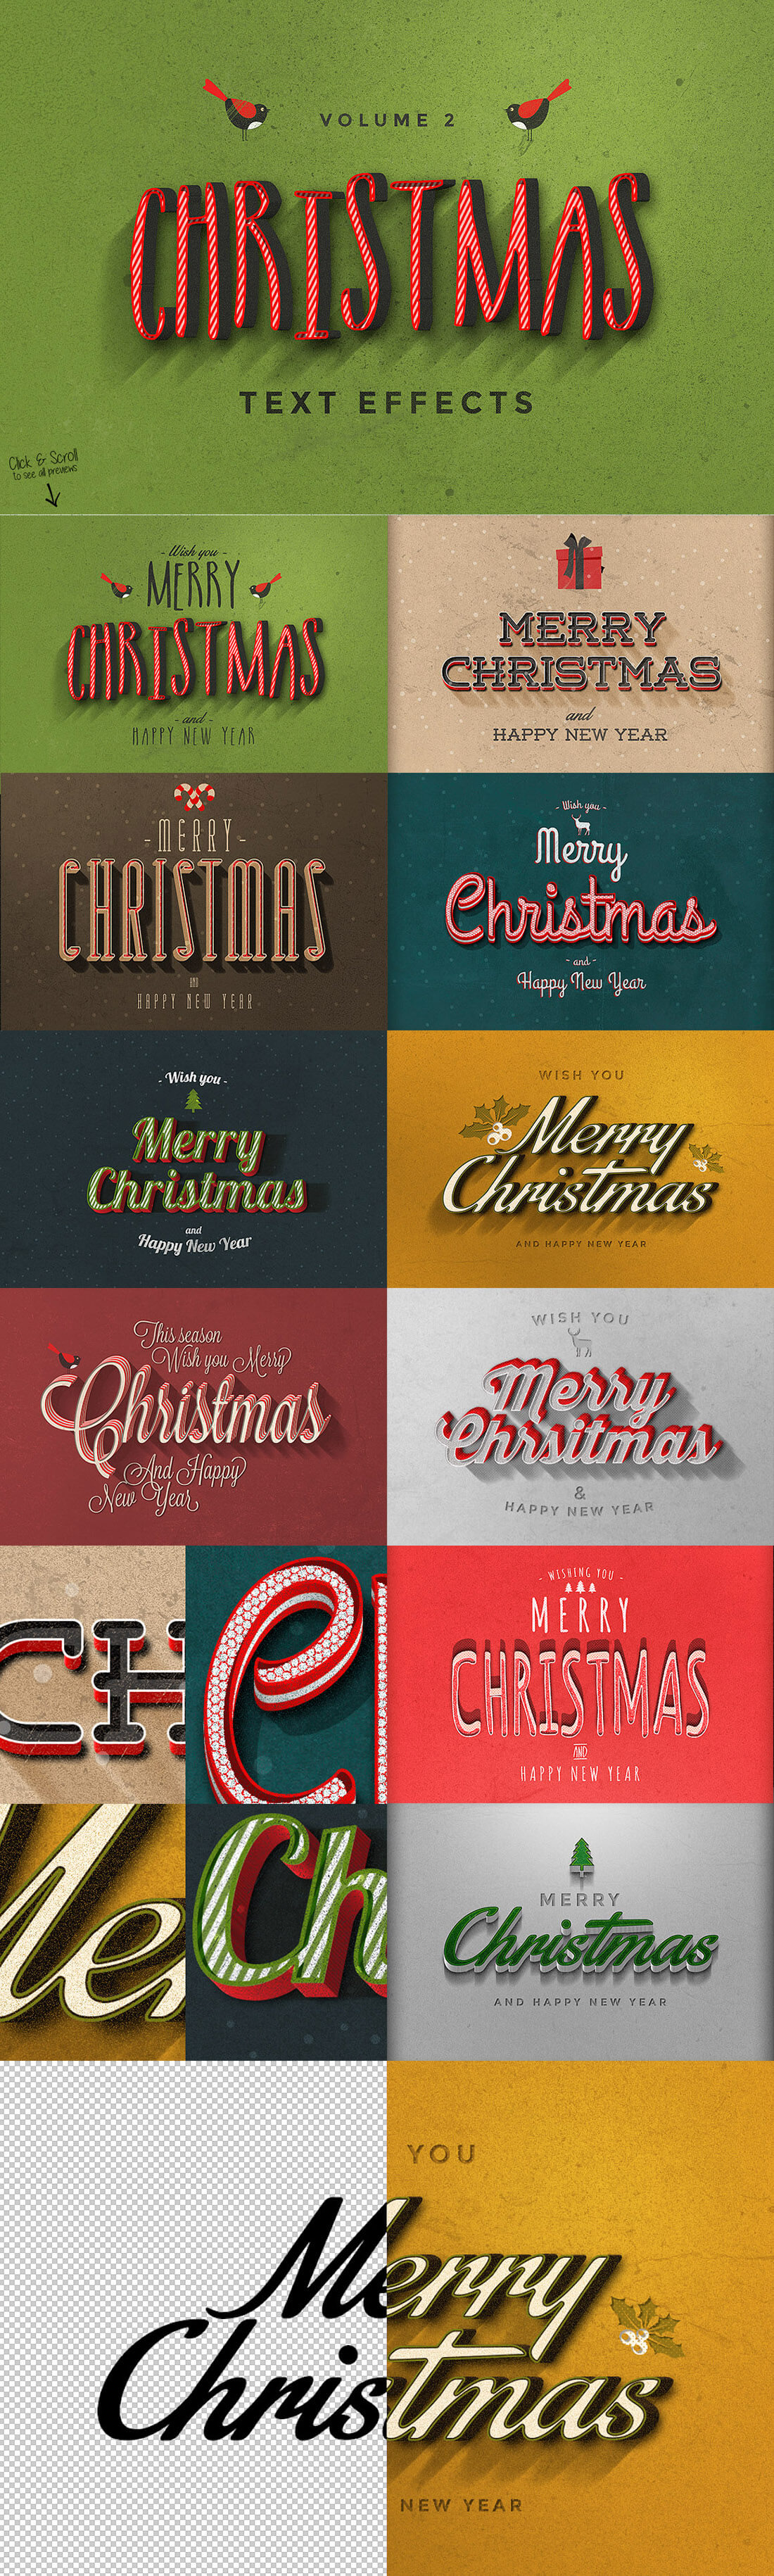 圣诞特典：400+圣诞主题设计素材包 Christmas Bundle 2016（2.35GB, AI, EPS, PSD 格式）插图3